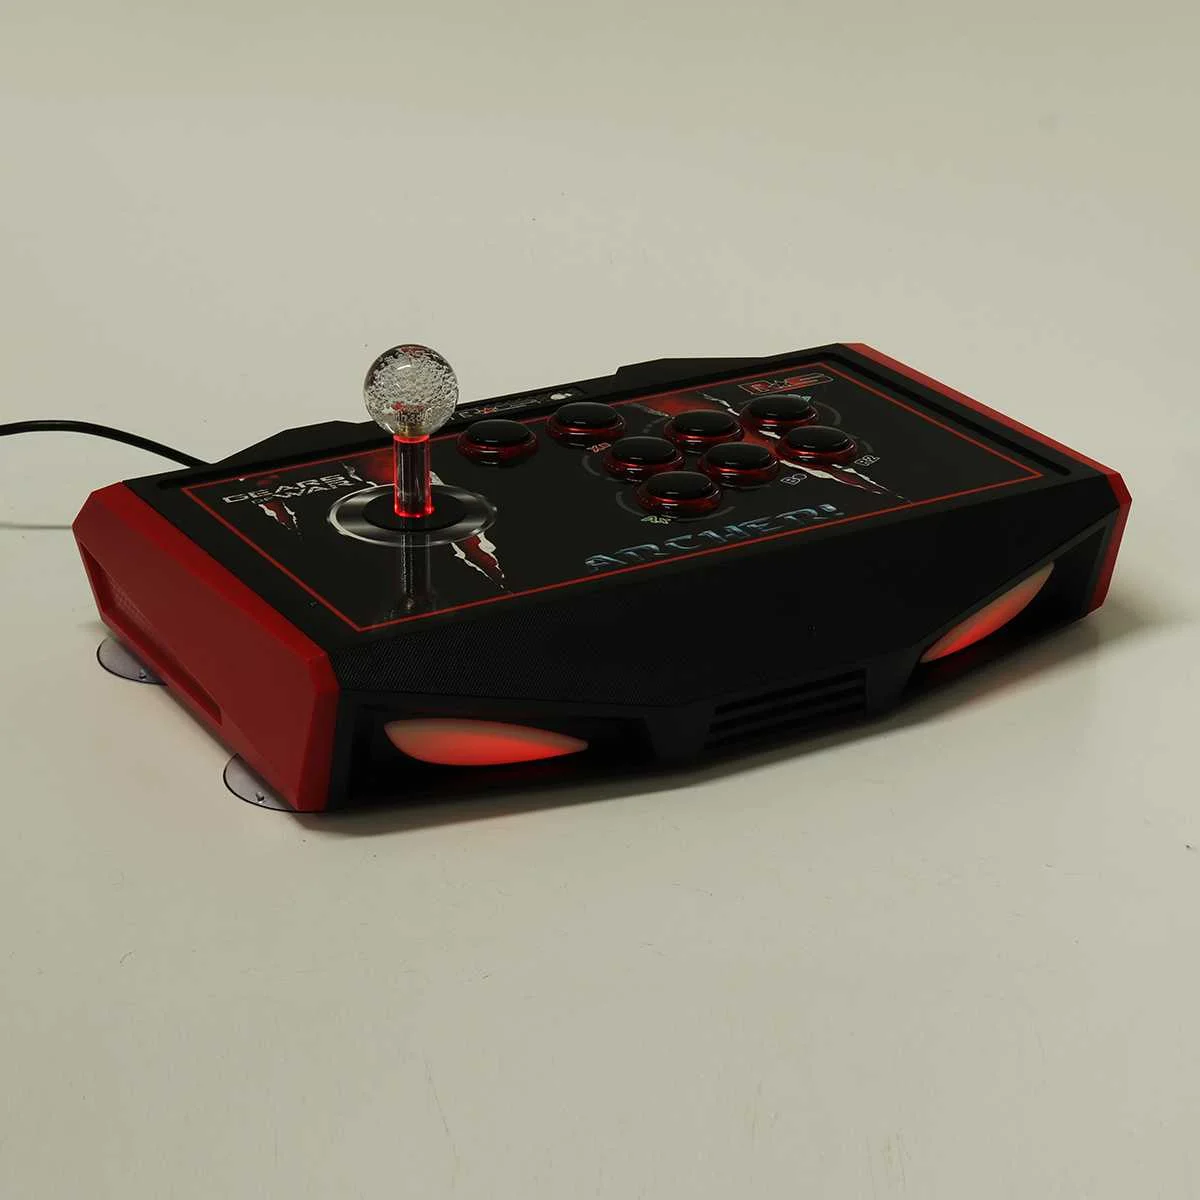 K3/T1/RS USB проводной игровой светодиодный джойстик для аркадных игр, файтинги, геймпад без задержки, игровая консоль для ПК - Цвет: RS Black red